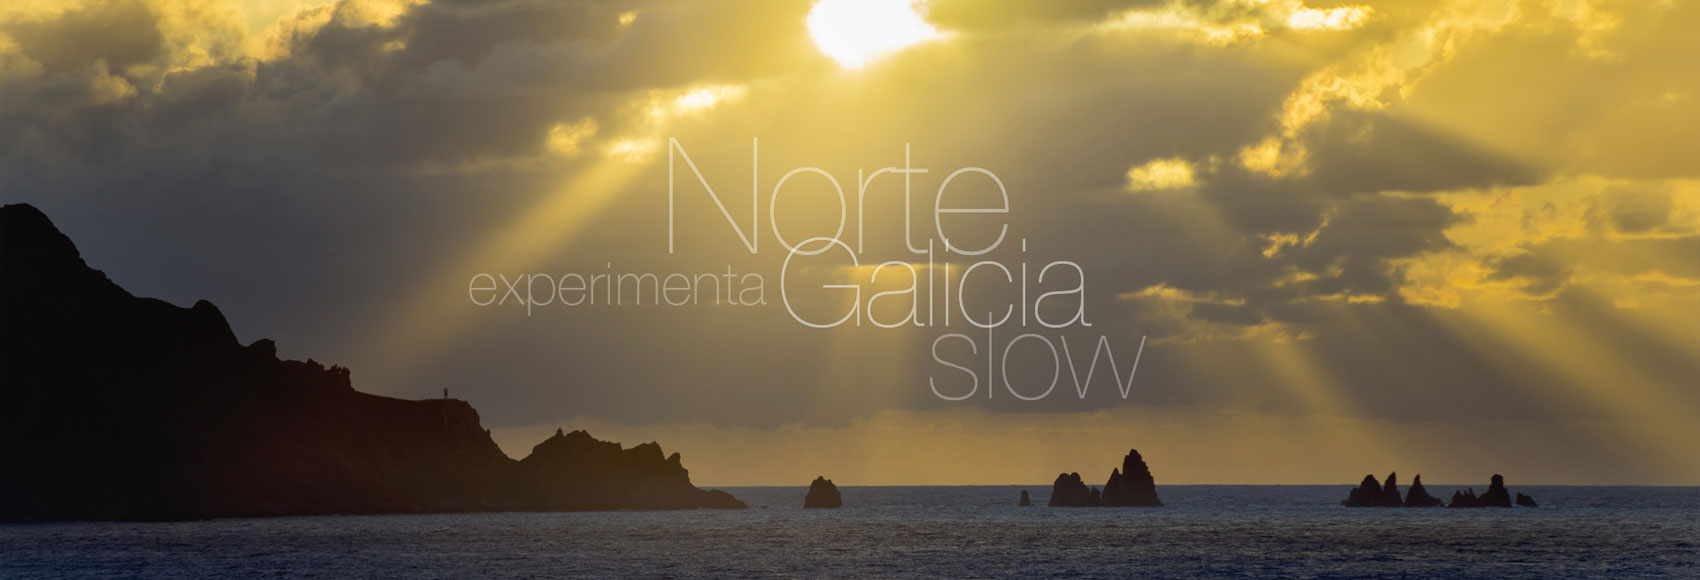 Norte Galicia Slow